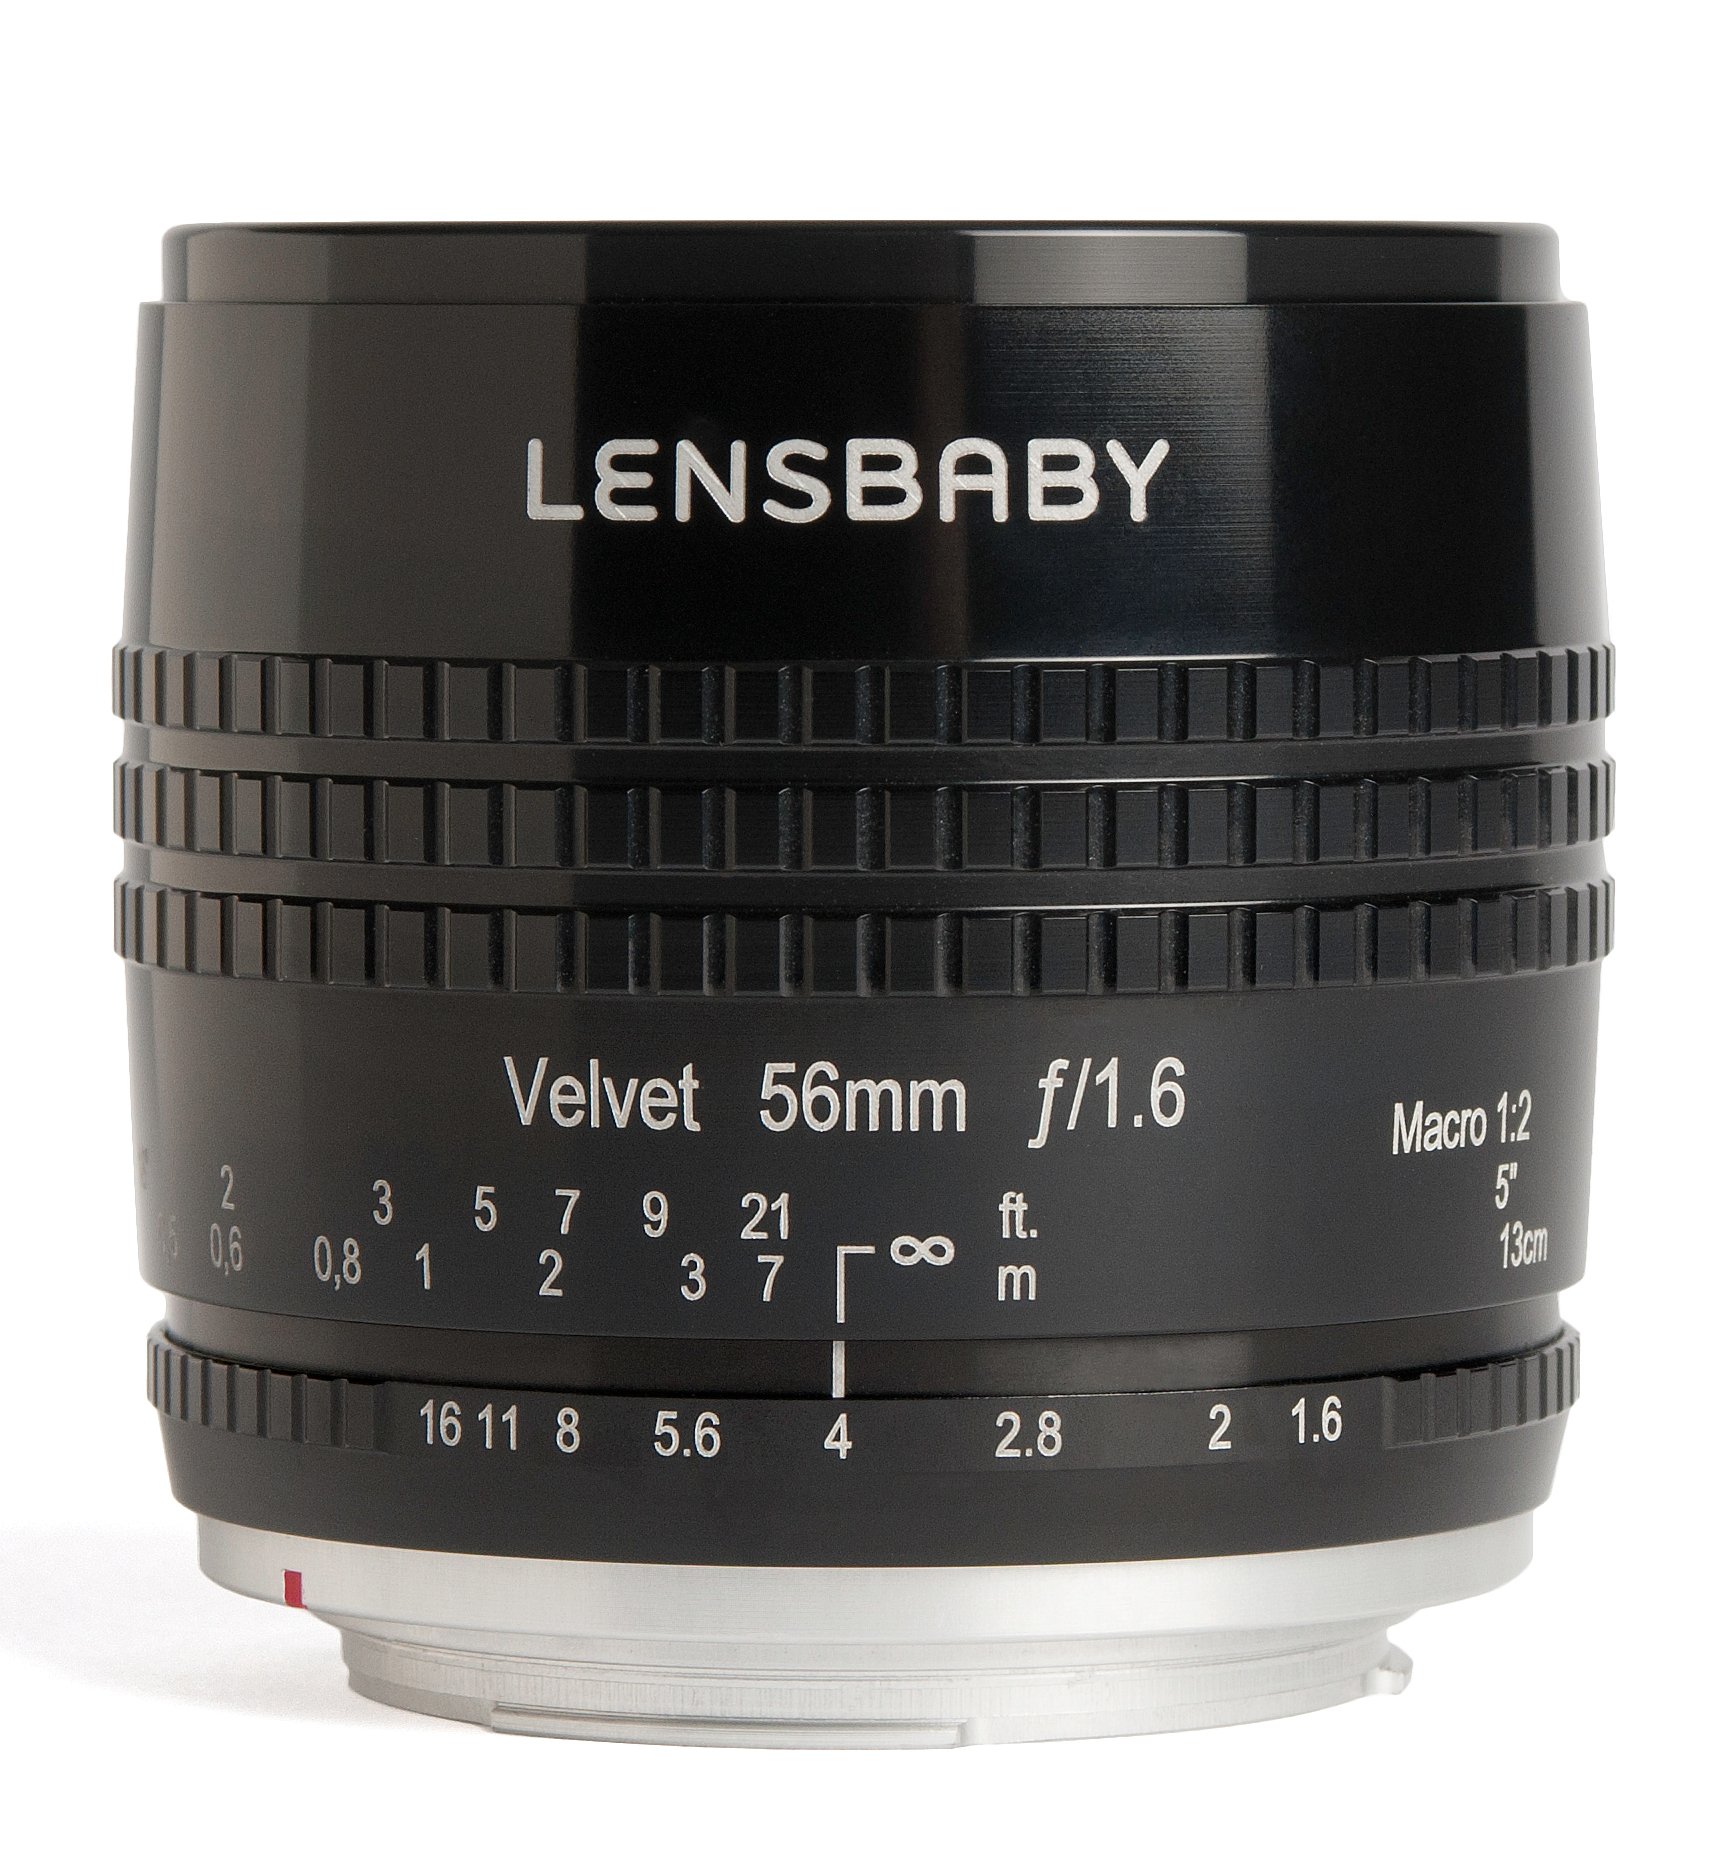 Lensbaby Velvet 56 Fuji X / Porträt und Makro Objektiv / ideal für samtige Bokeh-Effekte und kreative Unschärfe / Brennweite 56 mm, Blende f/1,6 / 1:2 Makro Vergrößerung mit 13 cm Naheinstellgrenze / passend für Fuji Systemkameras / schwarz